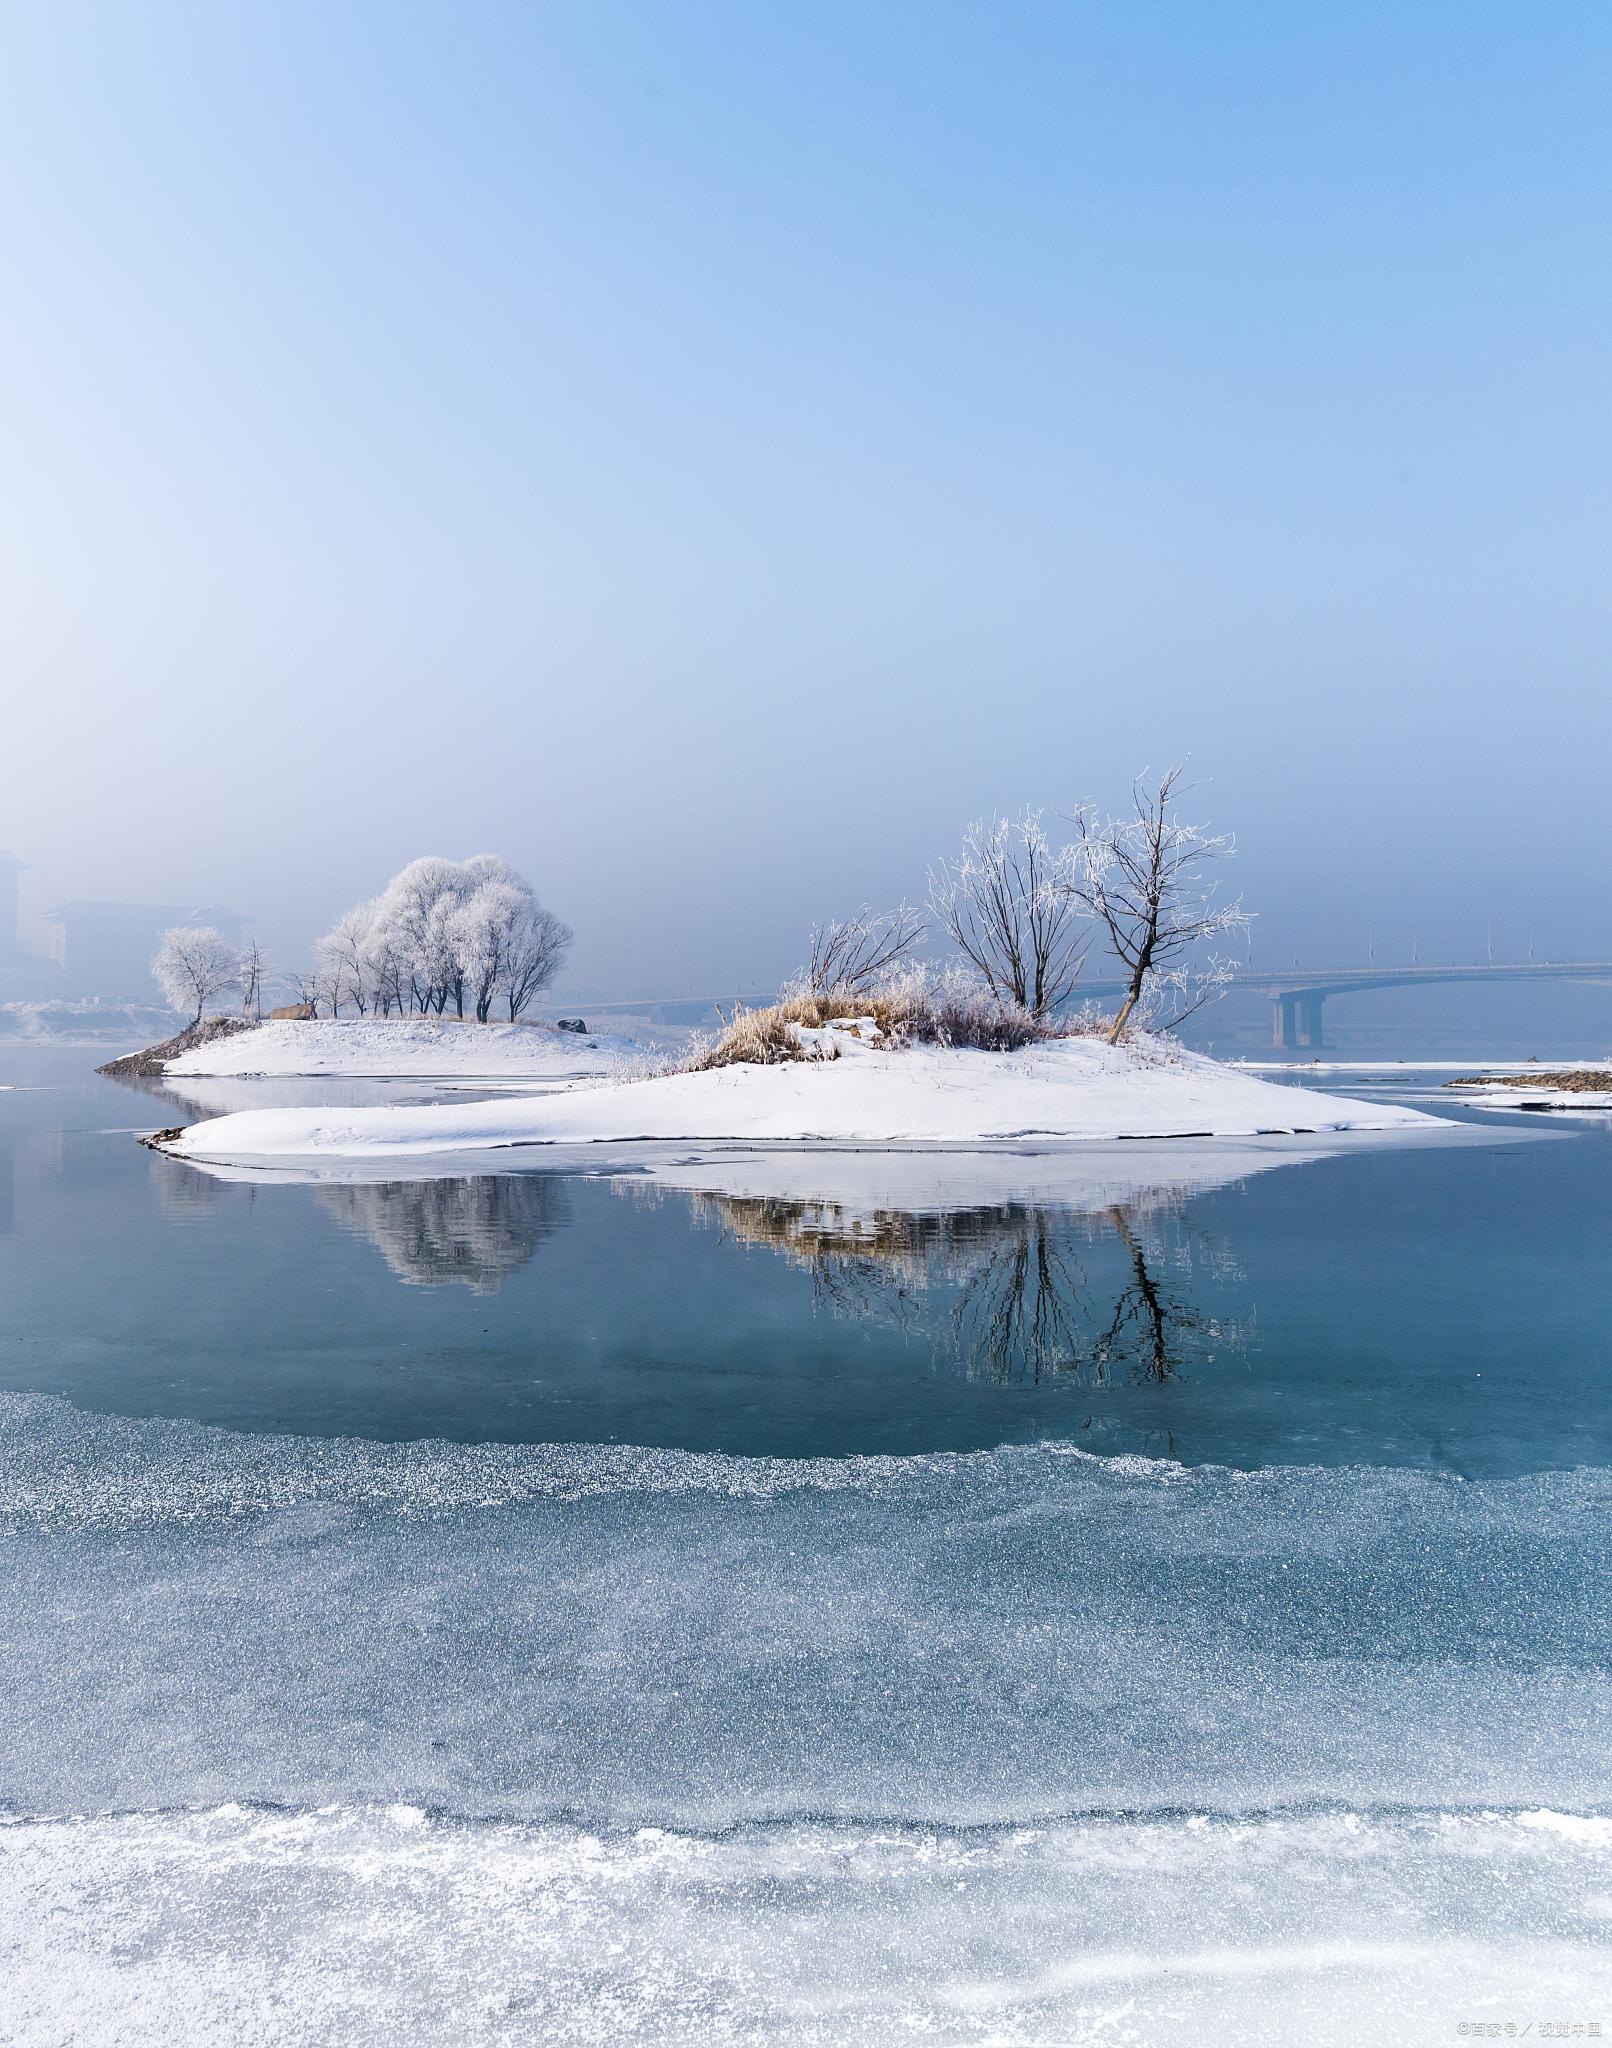 哈尔滨是中国东北地区的一个著名旅游城市,以其冰雪文化和风情而闻名